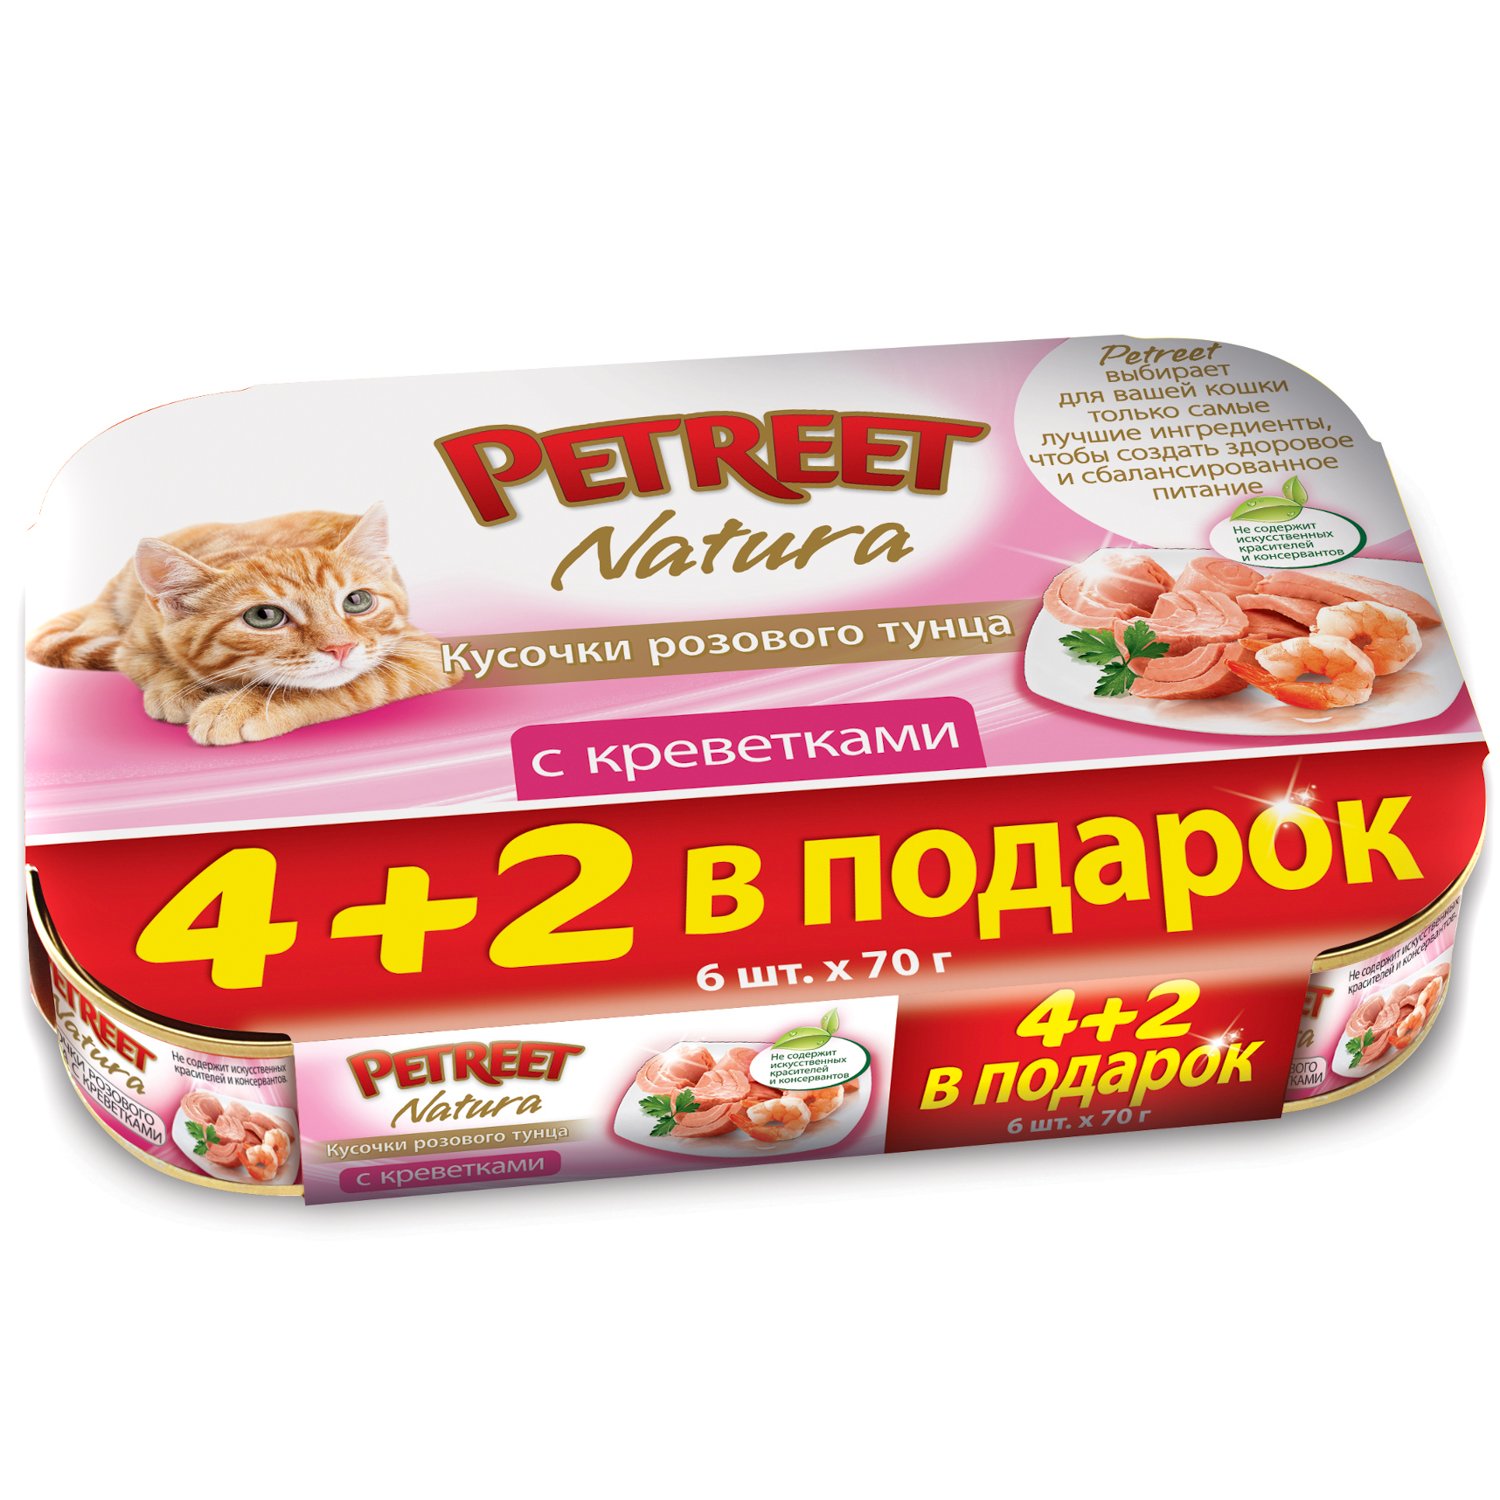 Корм влажный для кошек Petreet Multipack кусочки розового тунца с креветками - фото 1